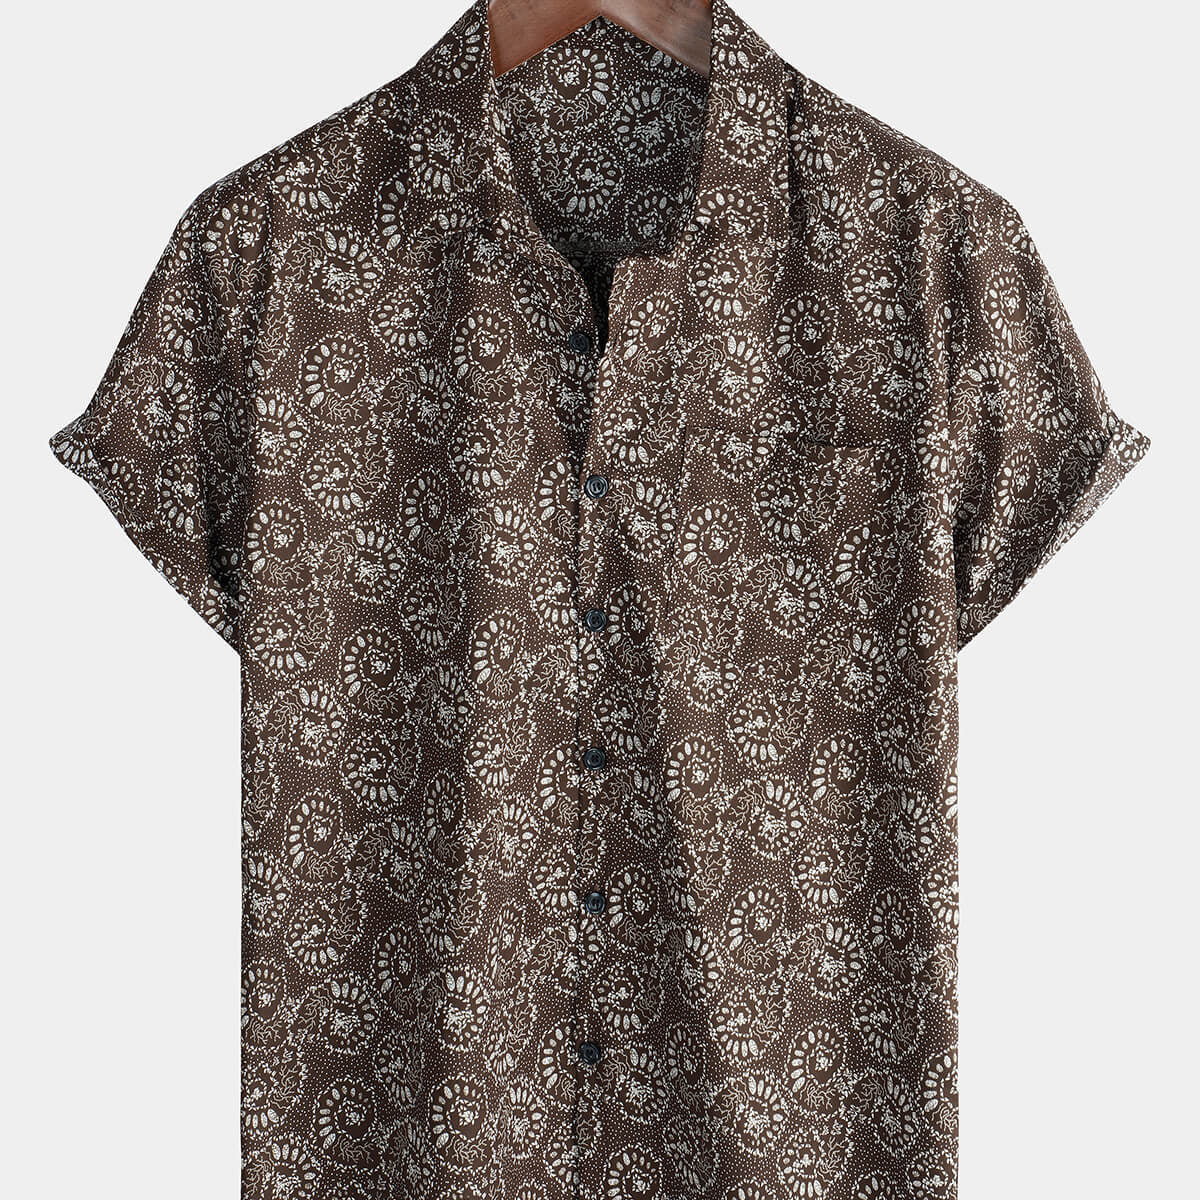 Men's Short Sleeve Button Up Cotton Shell Summer Retro Shirt